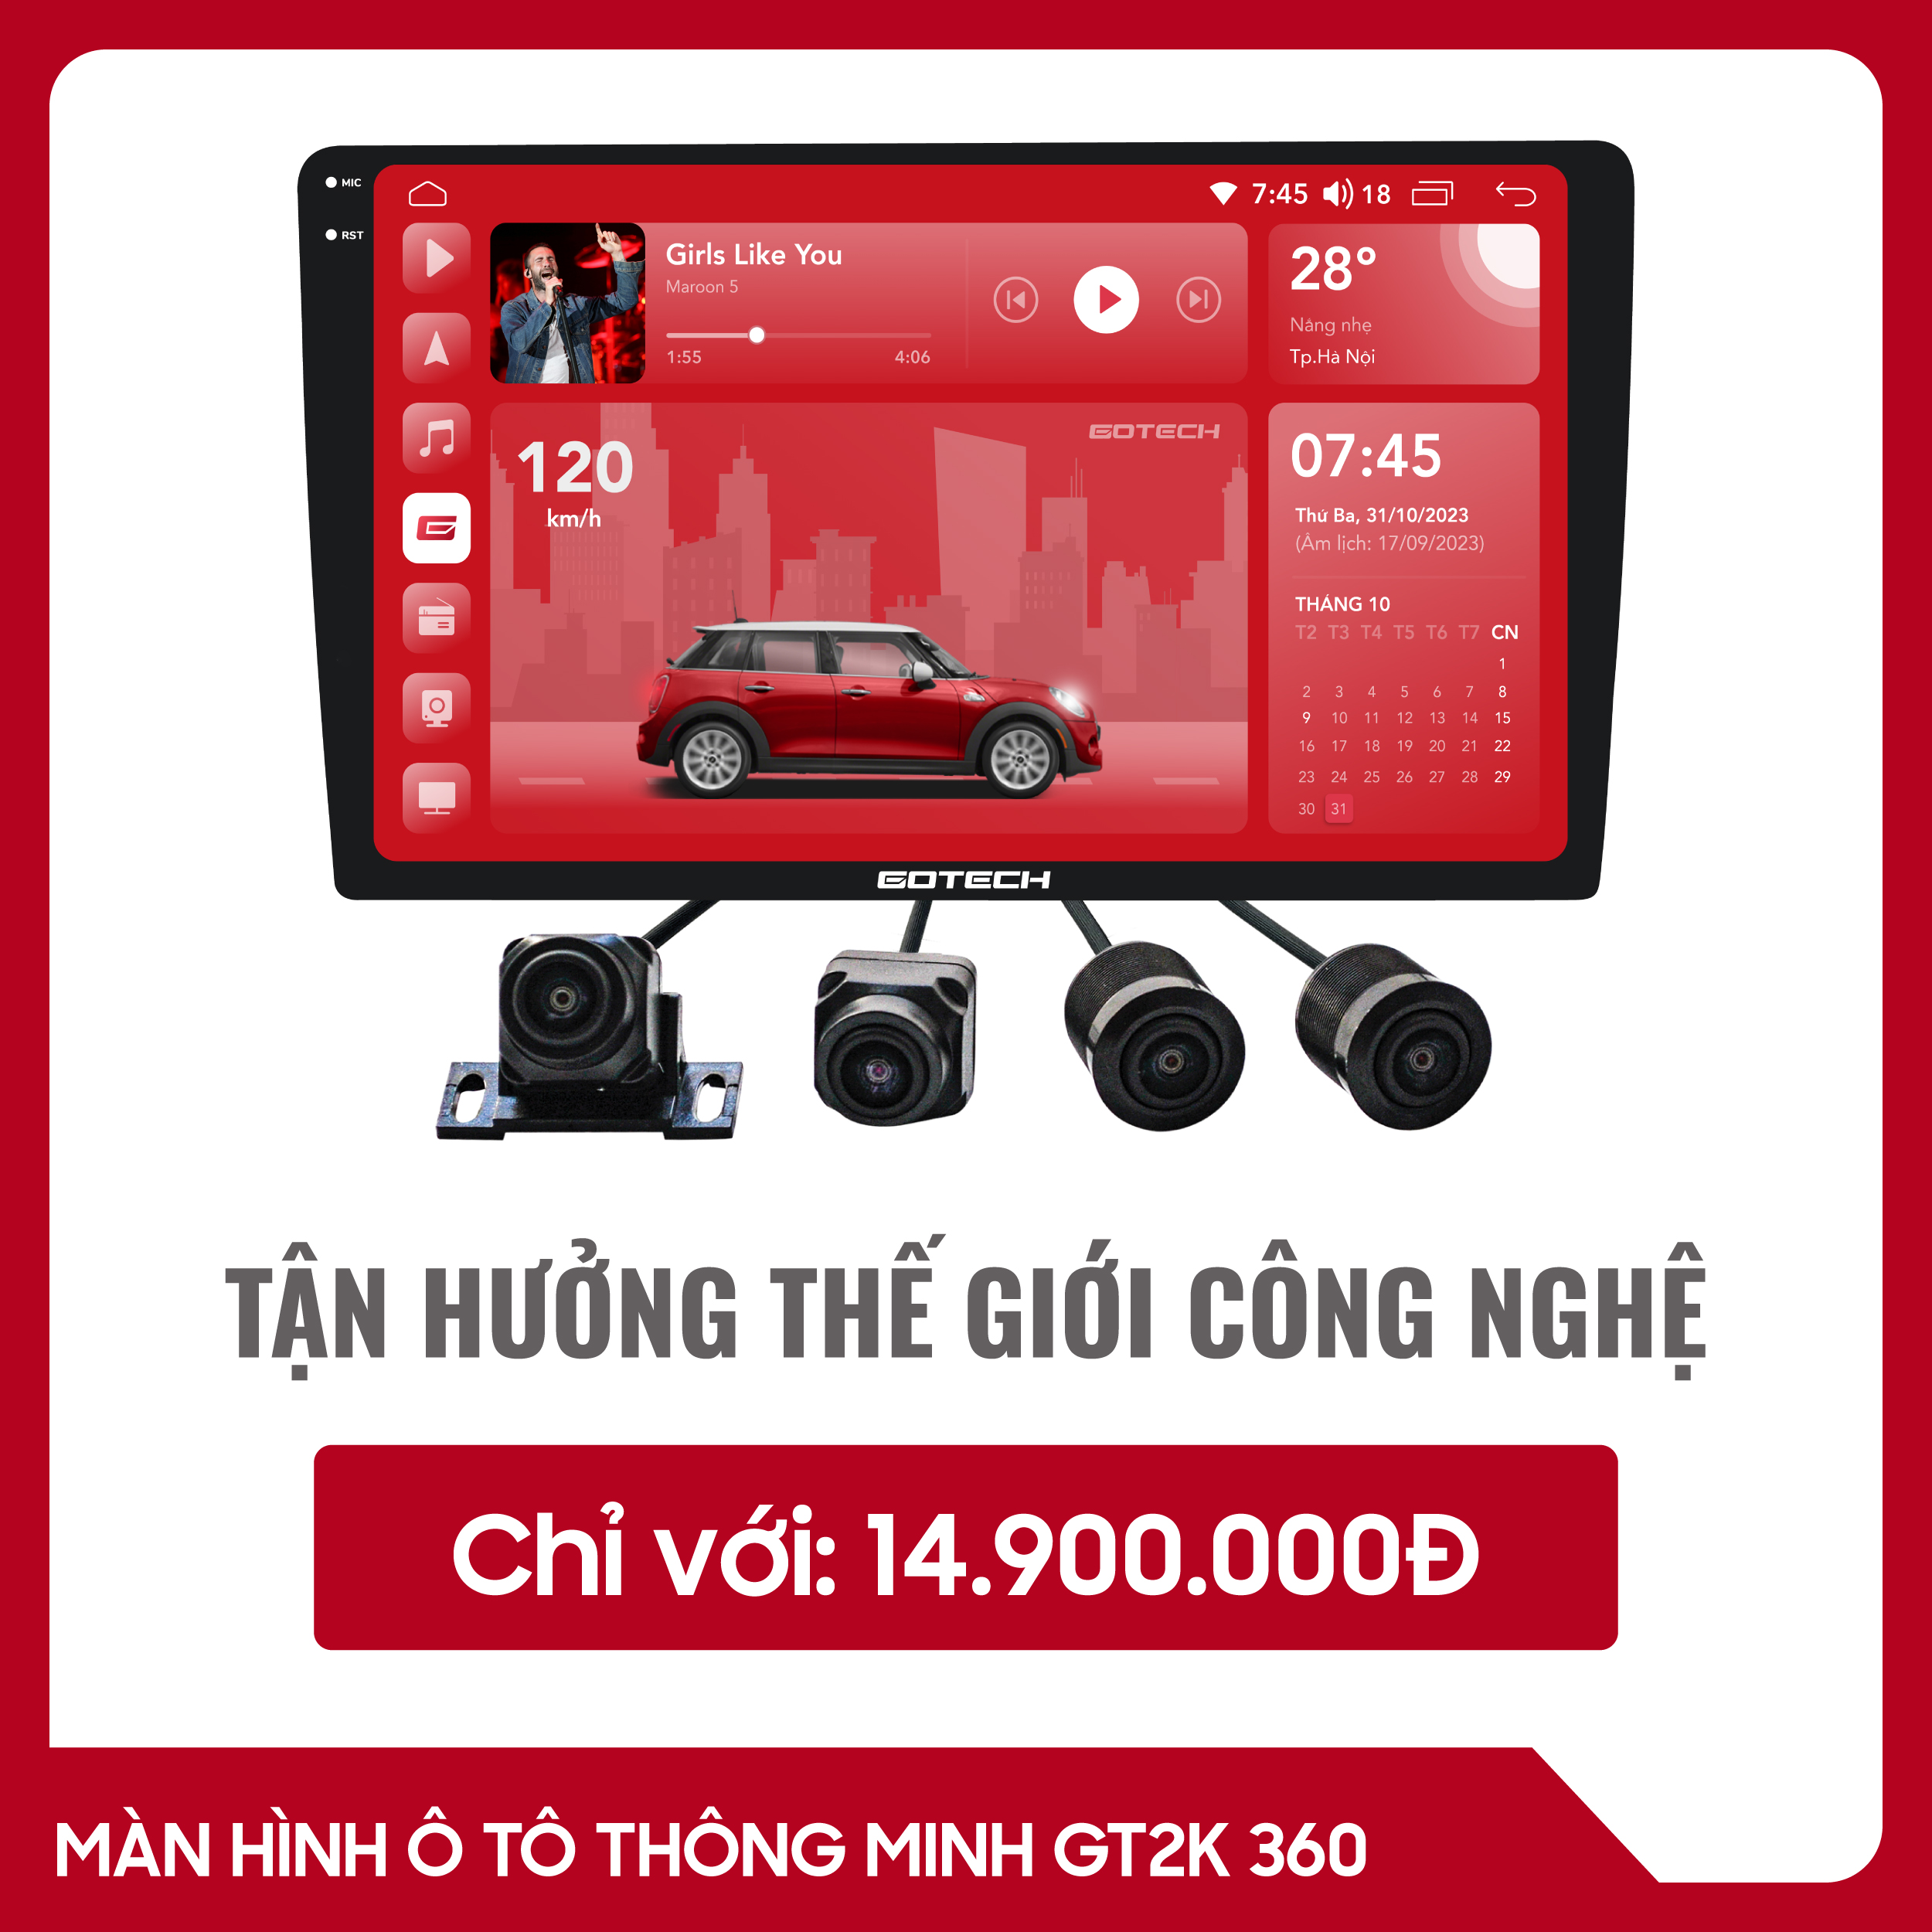 man-hinh-o-to-thong-minh-Gotech-GT2K-360